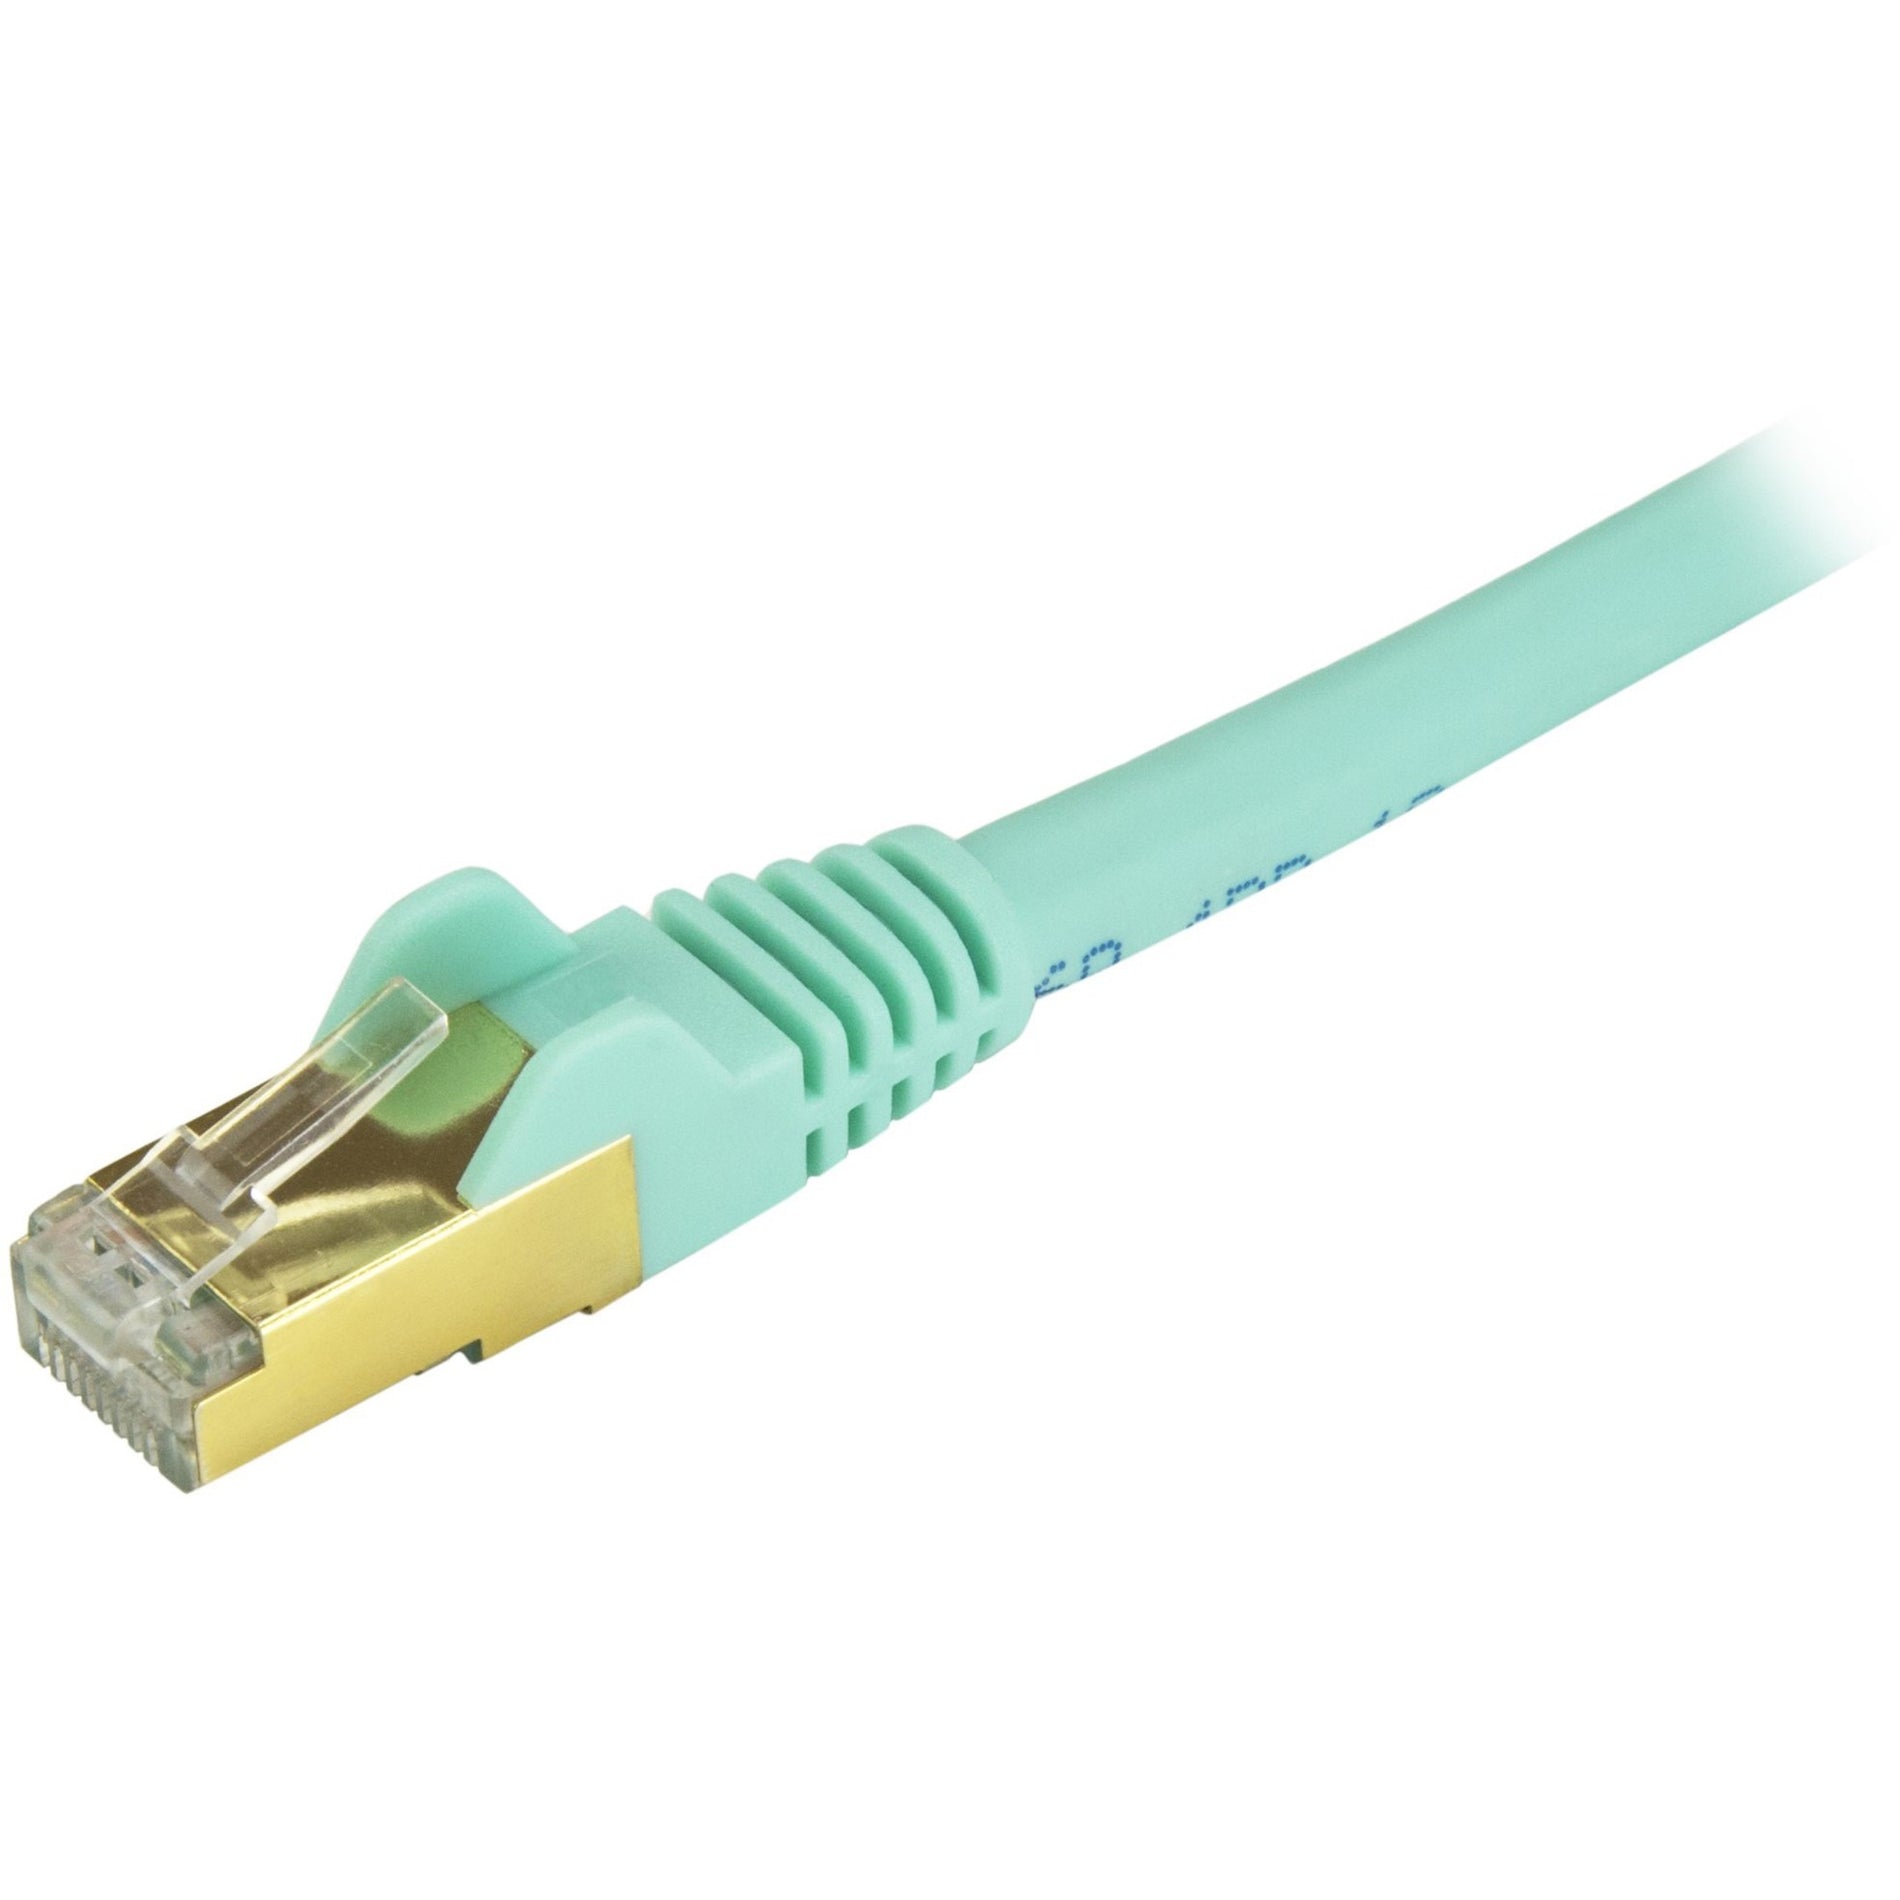 StarTech.com C6ASPAT15AQ Cat6a Ethernet Patch Cable - Shielded (STP) - 15 ft., Aqua, Long Ethernet Cord